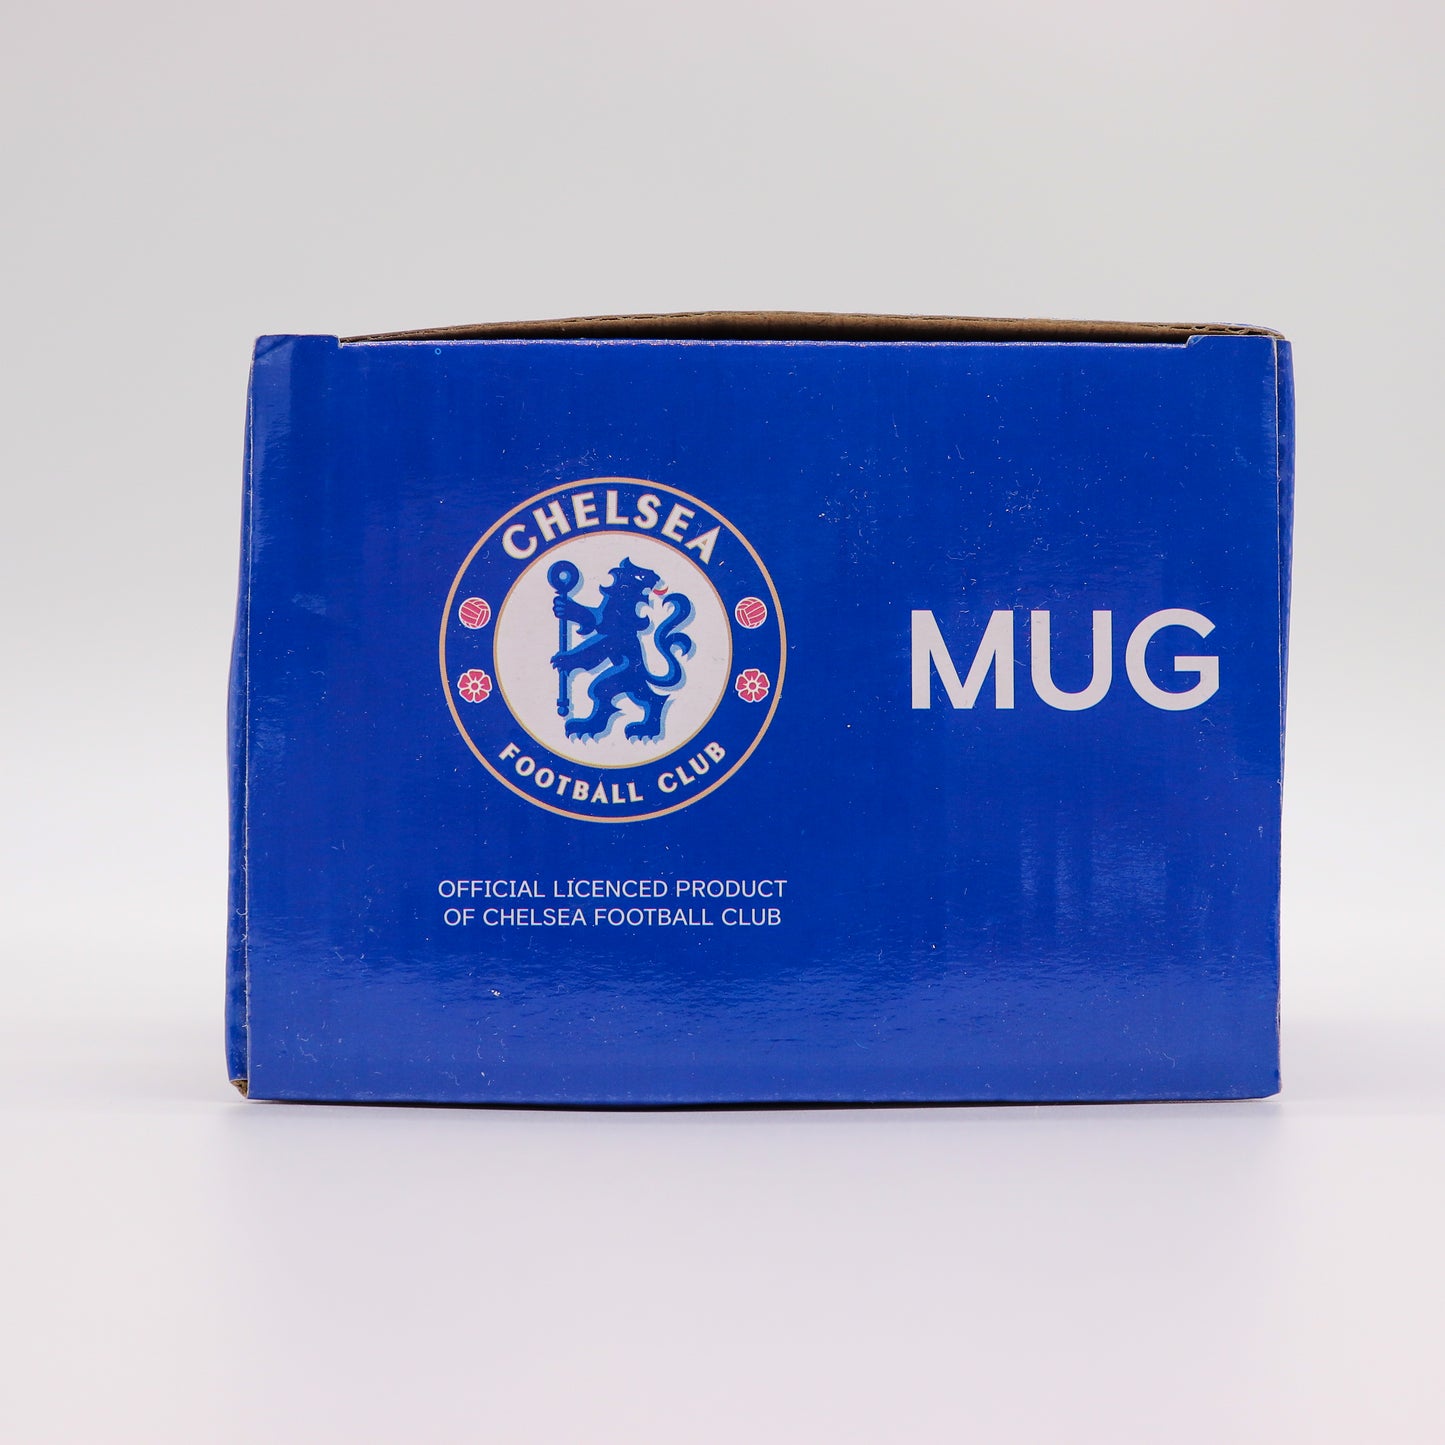 Chelsea Football Club Premium Souvenir Coffee Mug, New